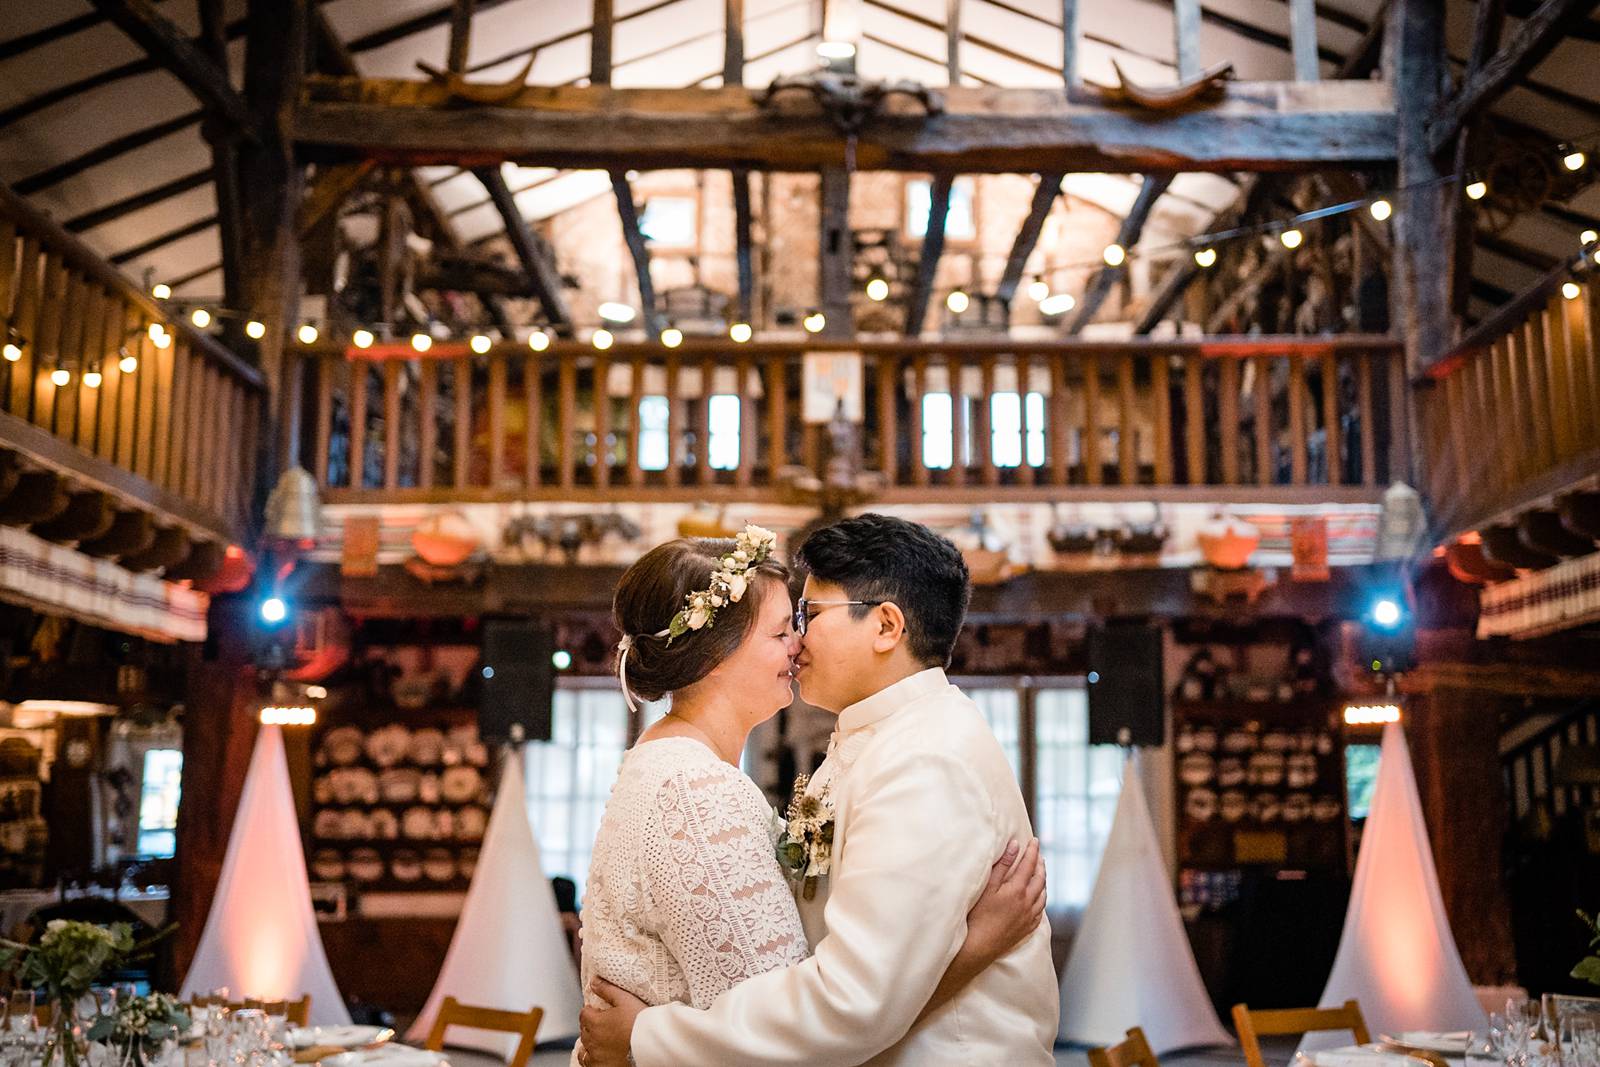 L'aperçu du mariage laïque franco-philippin de E+A à Bidart puis de la cérémonie Laïque à la Ferme Inharria au Pays Basque. Alexandre Roschewitz Photographe.